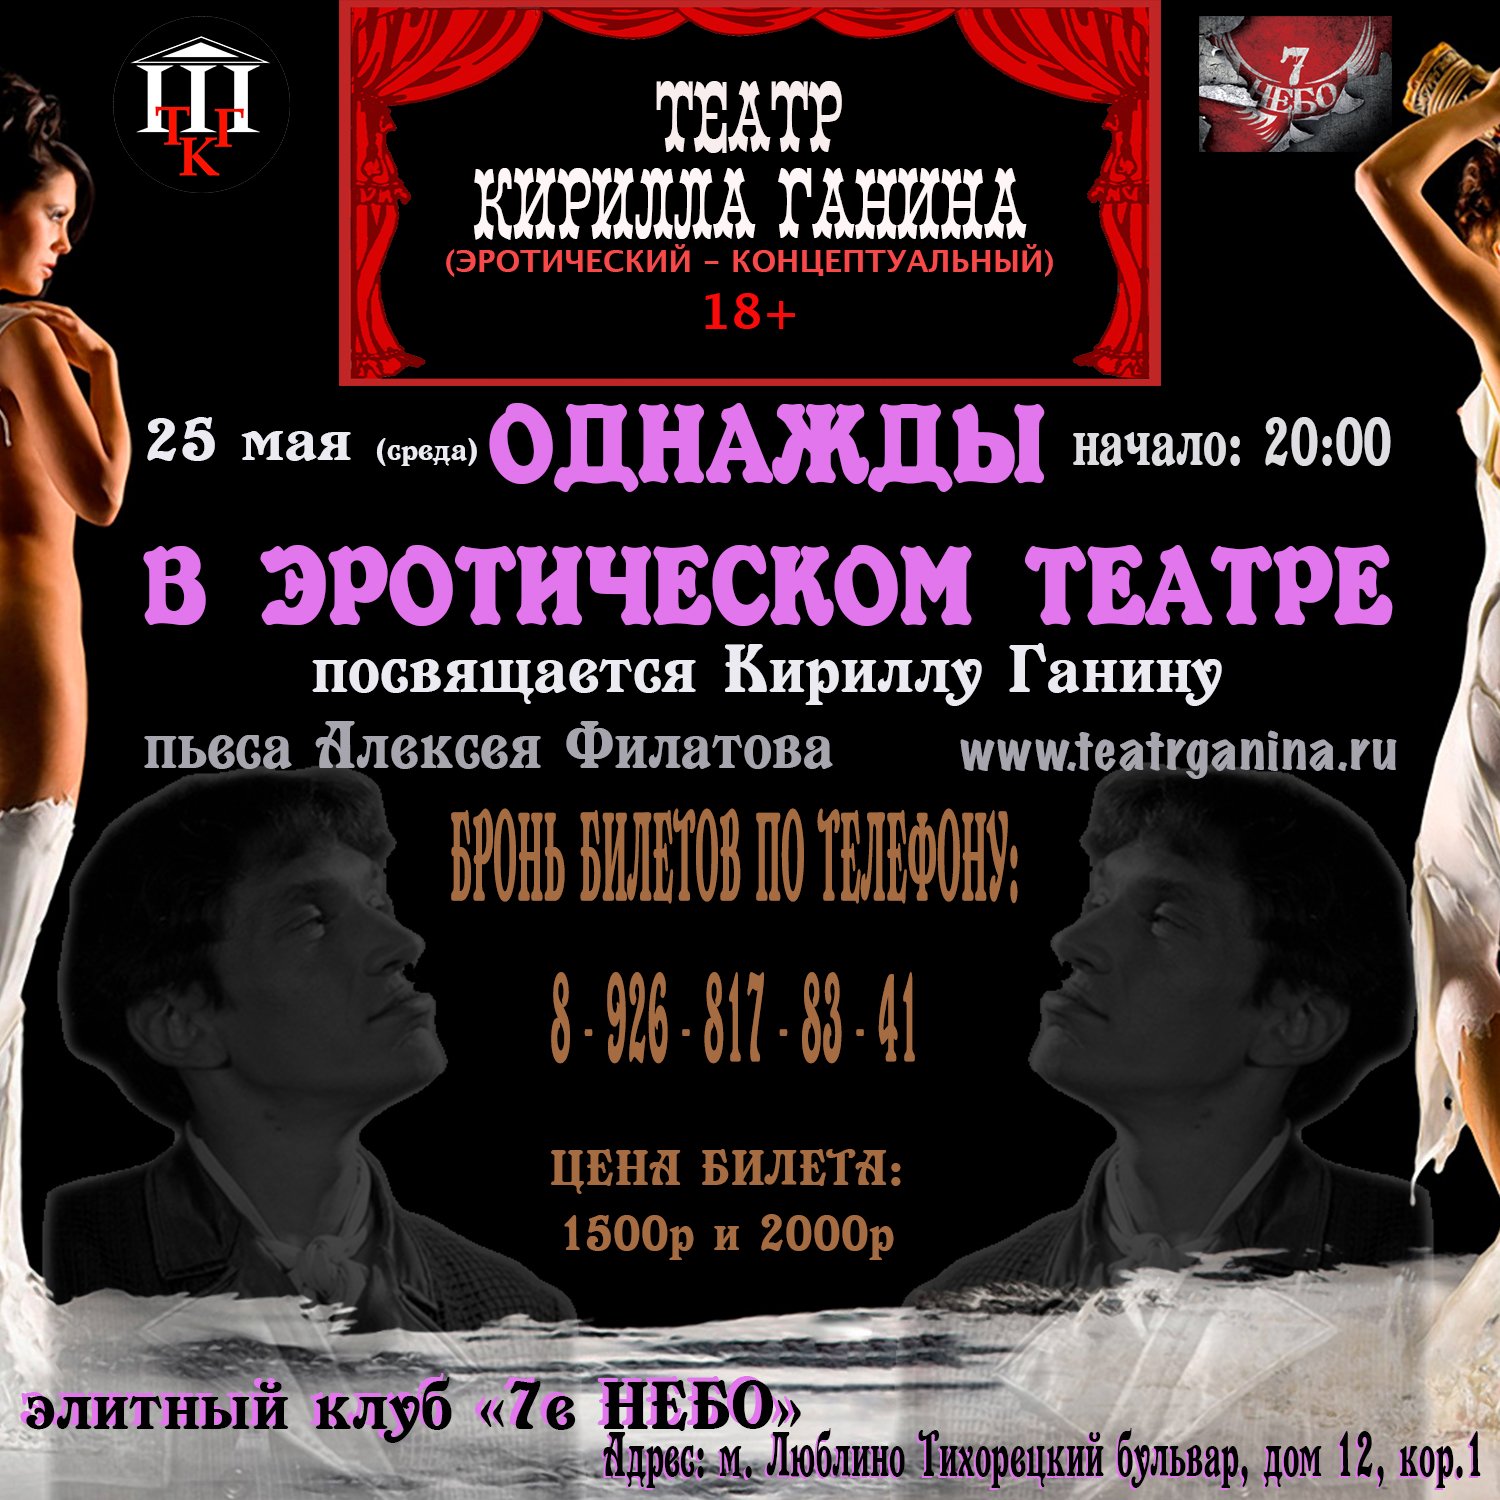 "ОДНАЖДЫ В ЭРОТИЧЕСКОМ ТЕАТРЕ" Театр Кирилла Ганина